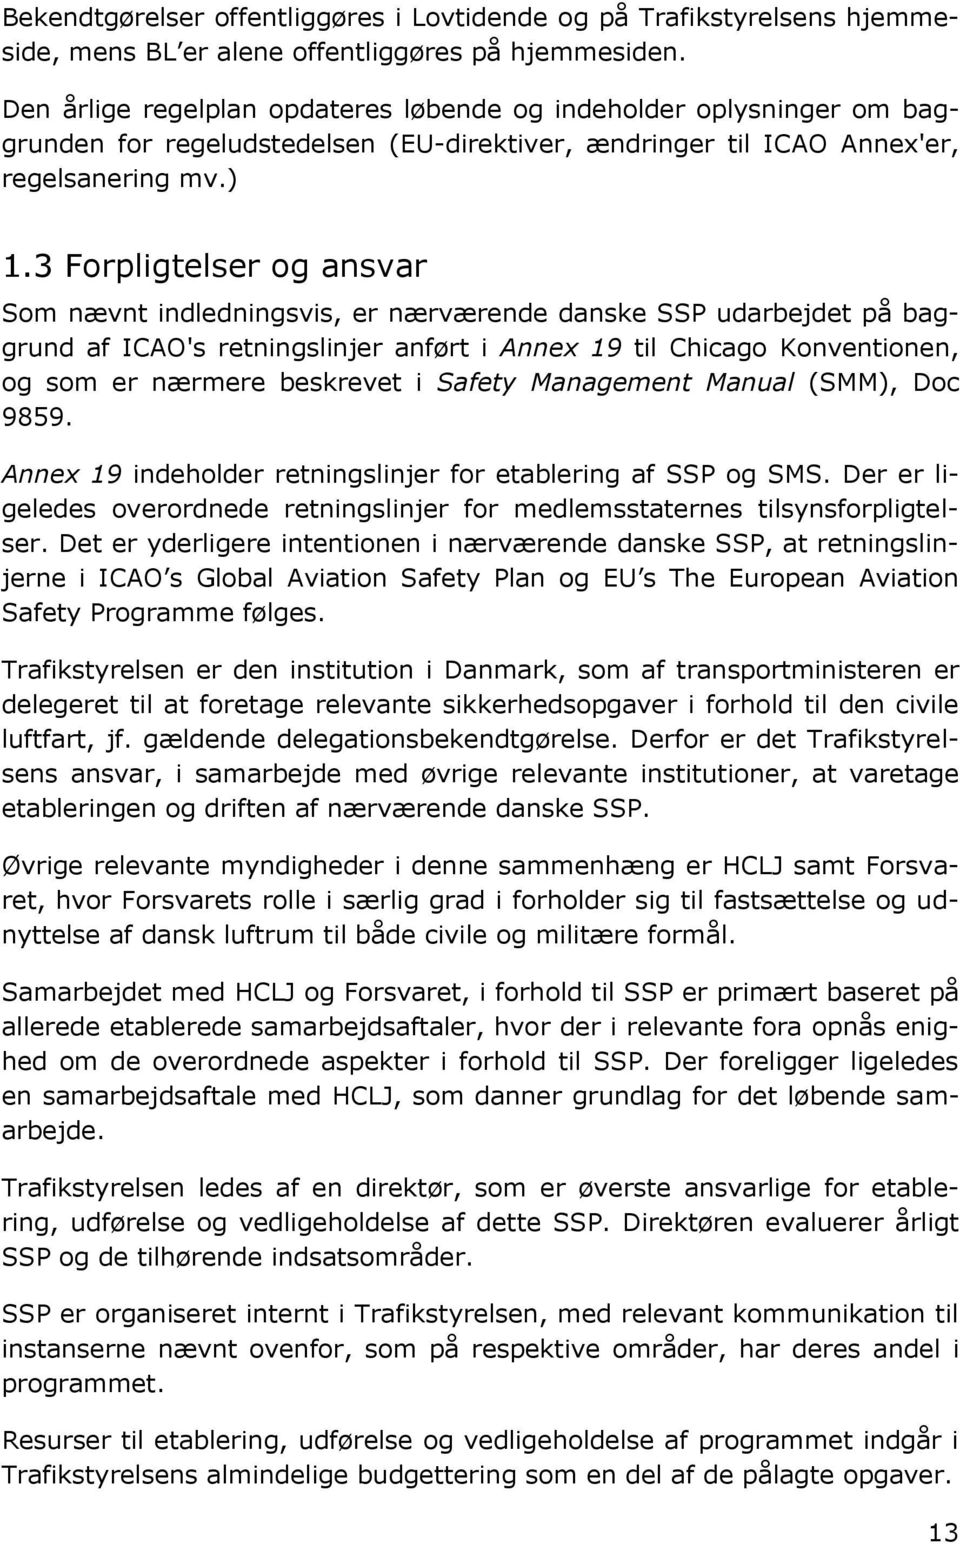 3 Forpligtelser og ansvar Som nævnt indledningsvis, er nærværende danske SSP udarbejdet på baggrund af ICAO's retningslinjer anført i Annex 19 til Chicago Konventionen, og som er nærmere beskrevet i